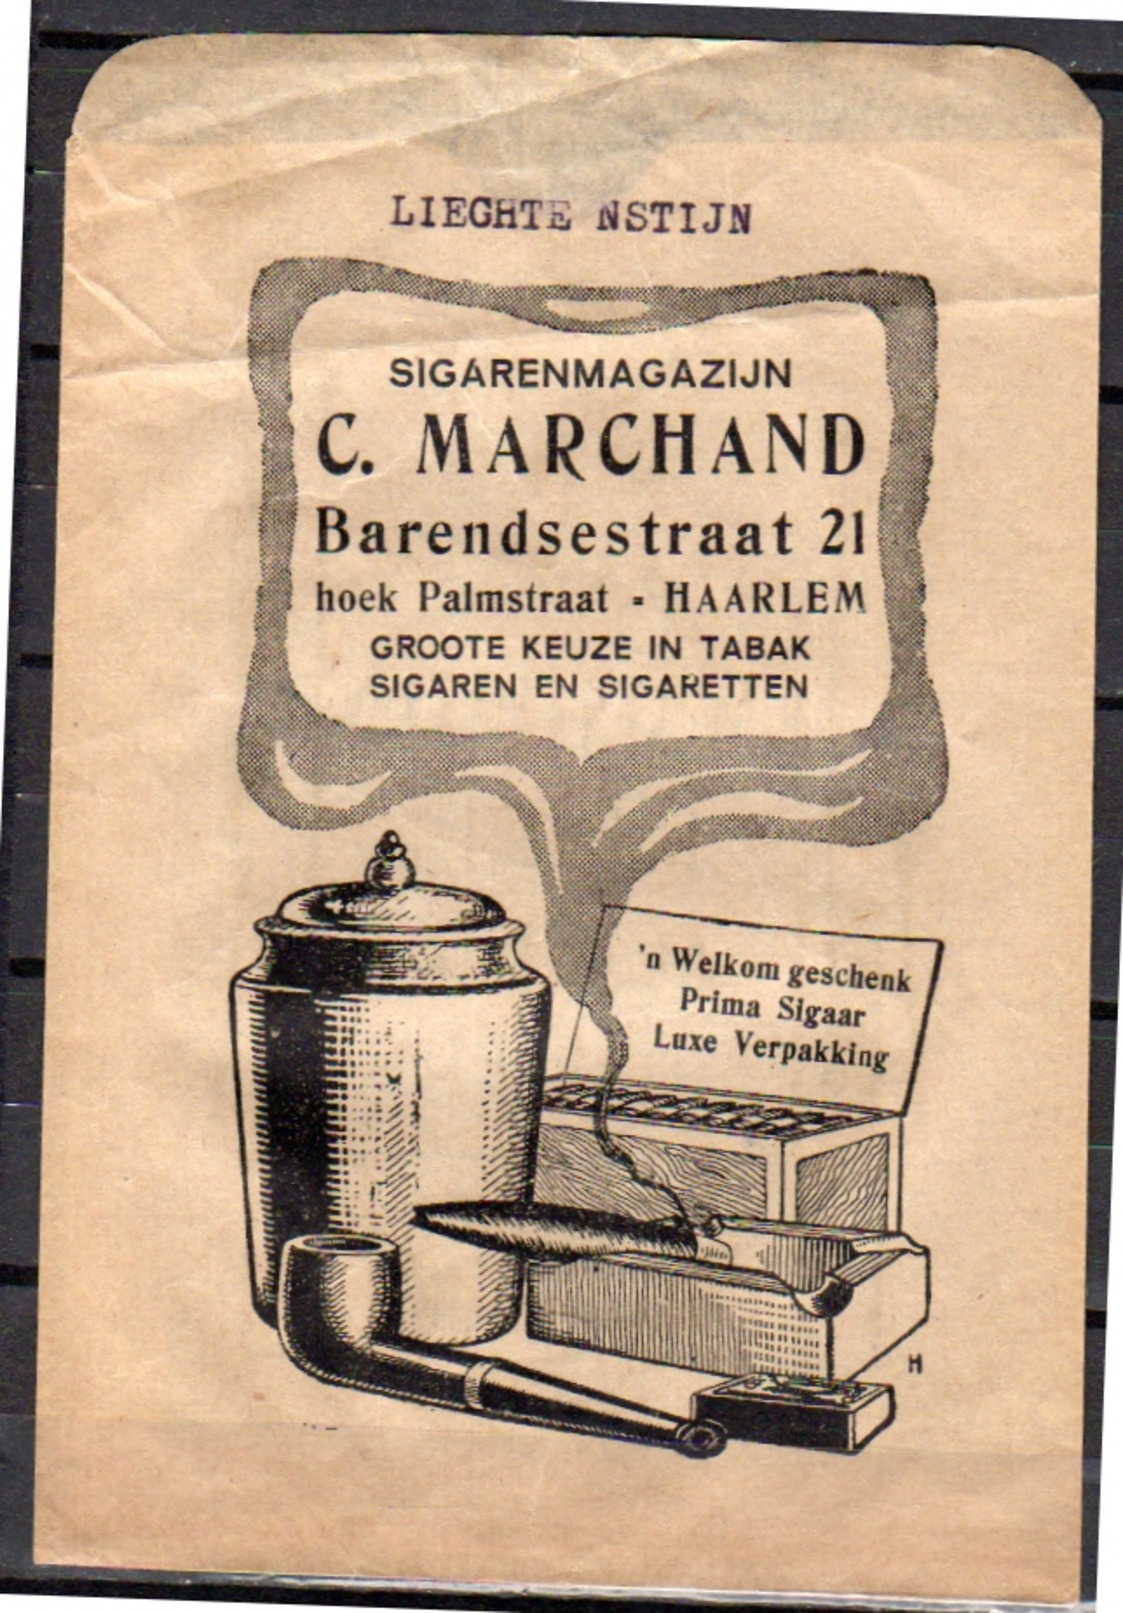 Classis Advertisement Sigarenmagazijn Marchand Barendsestraaat Palmstraat Haarlem Tabak & Cigaretten (z1) - Reclame